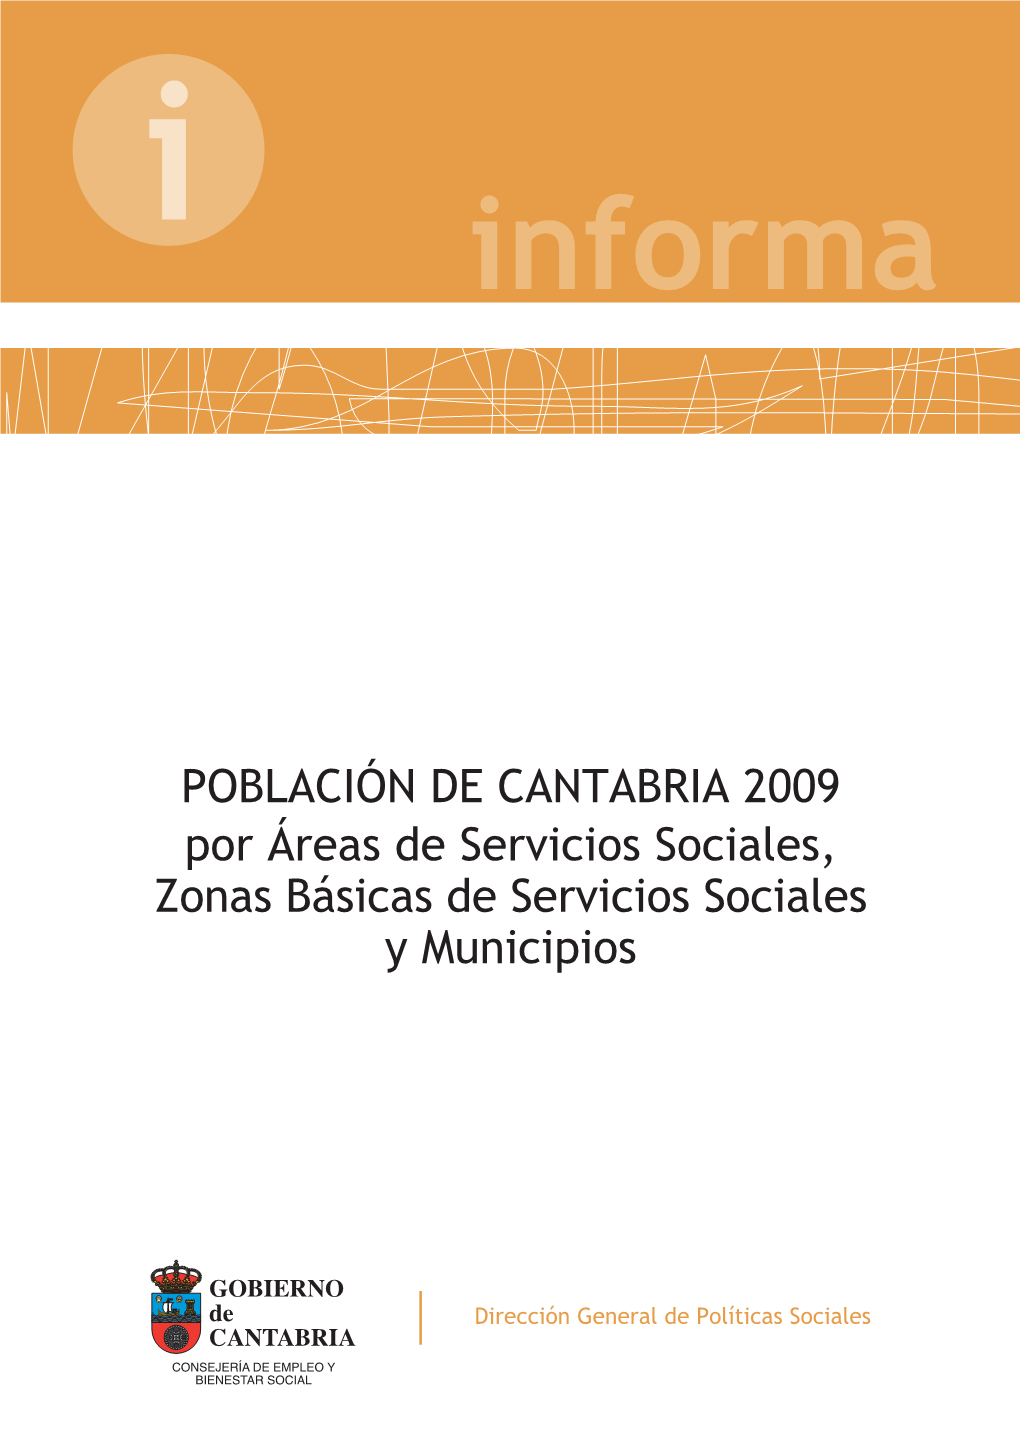 Población De Cantabria Por Áreas De Servicios Sociales, Zonas Básicas Y